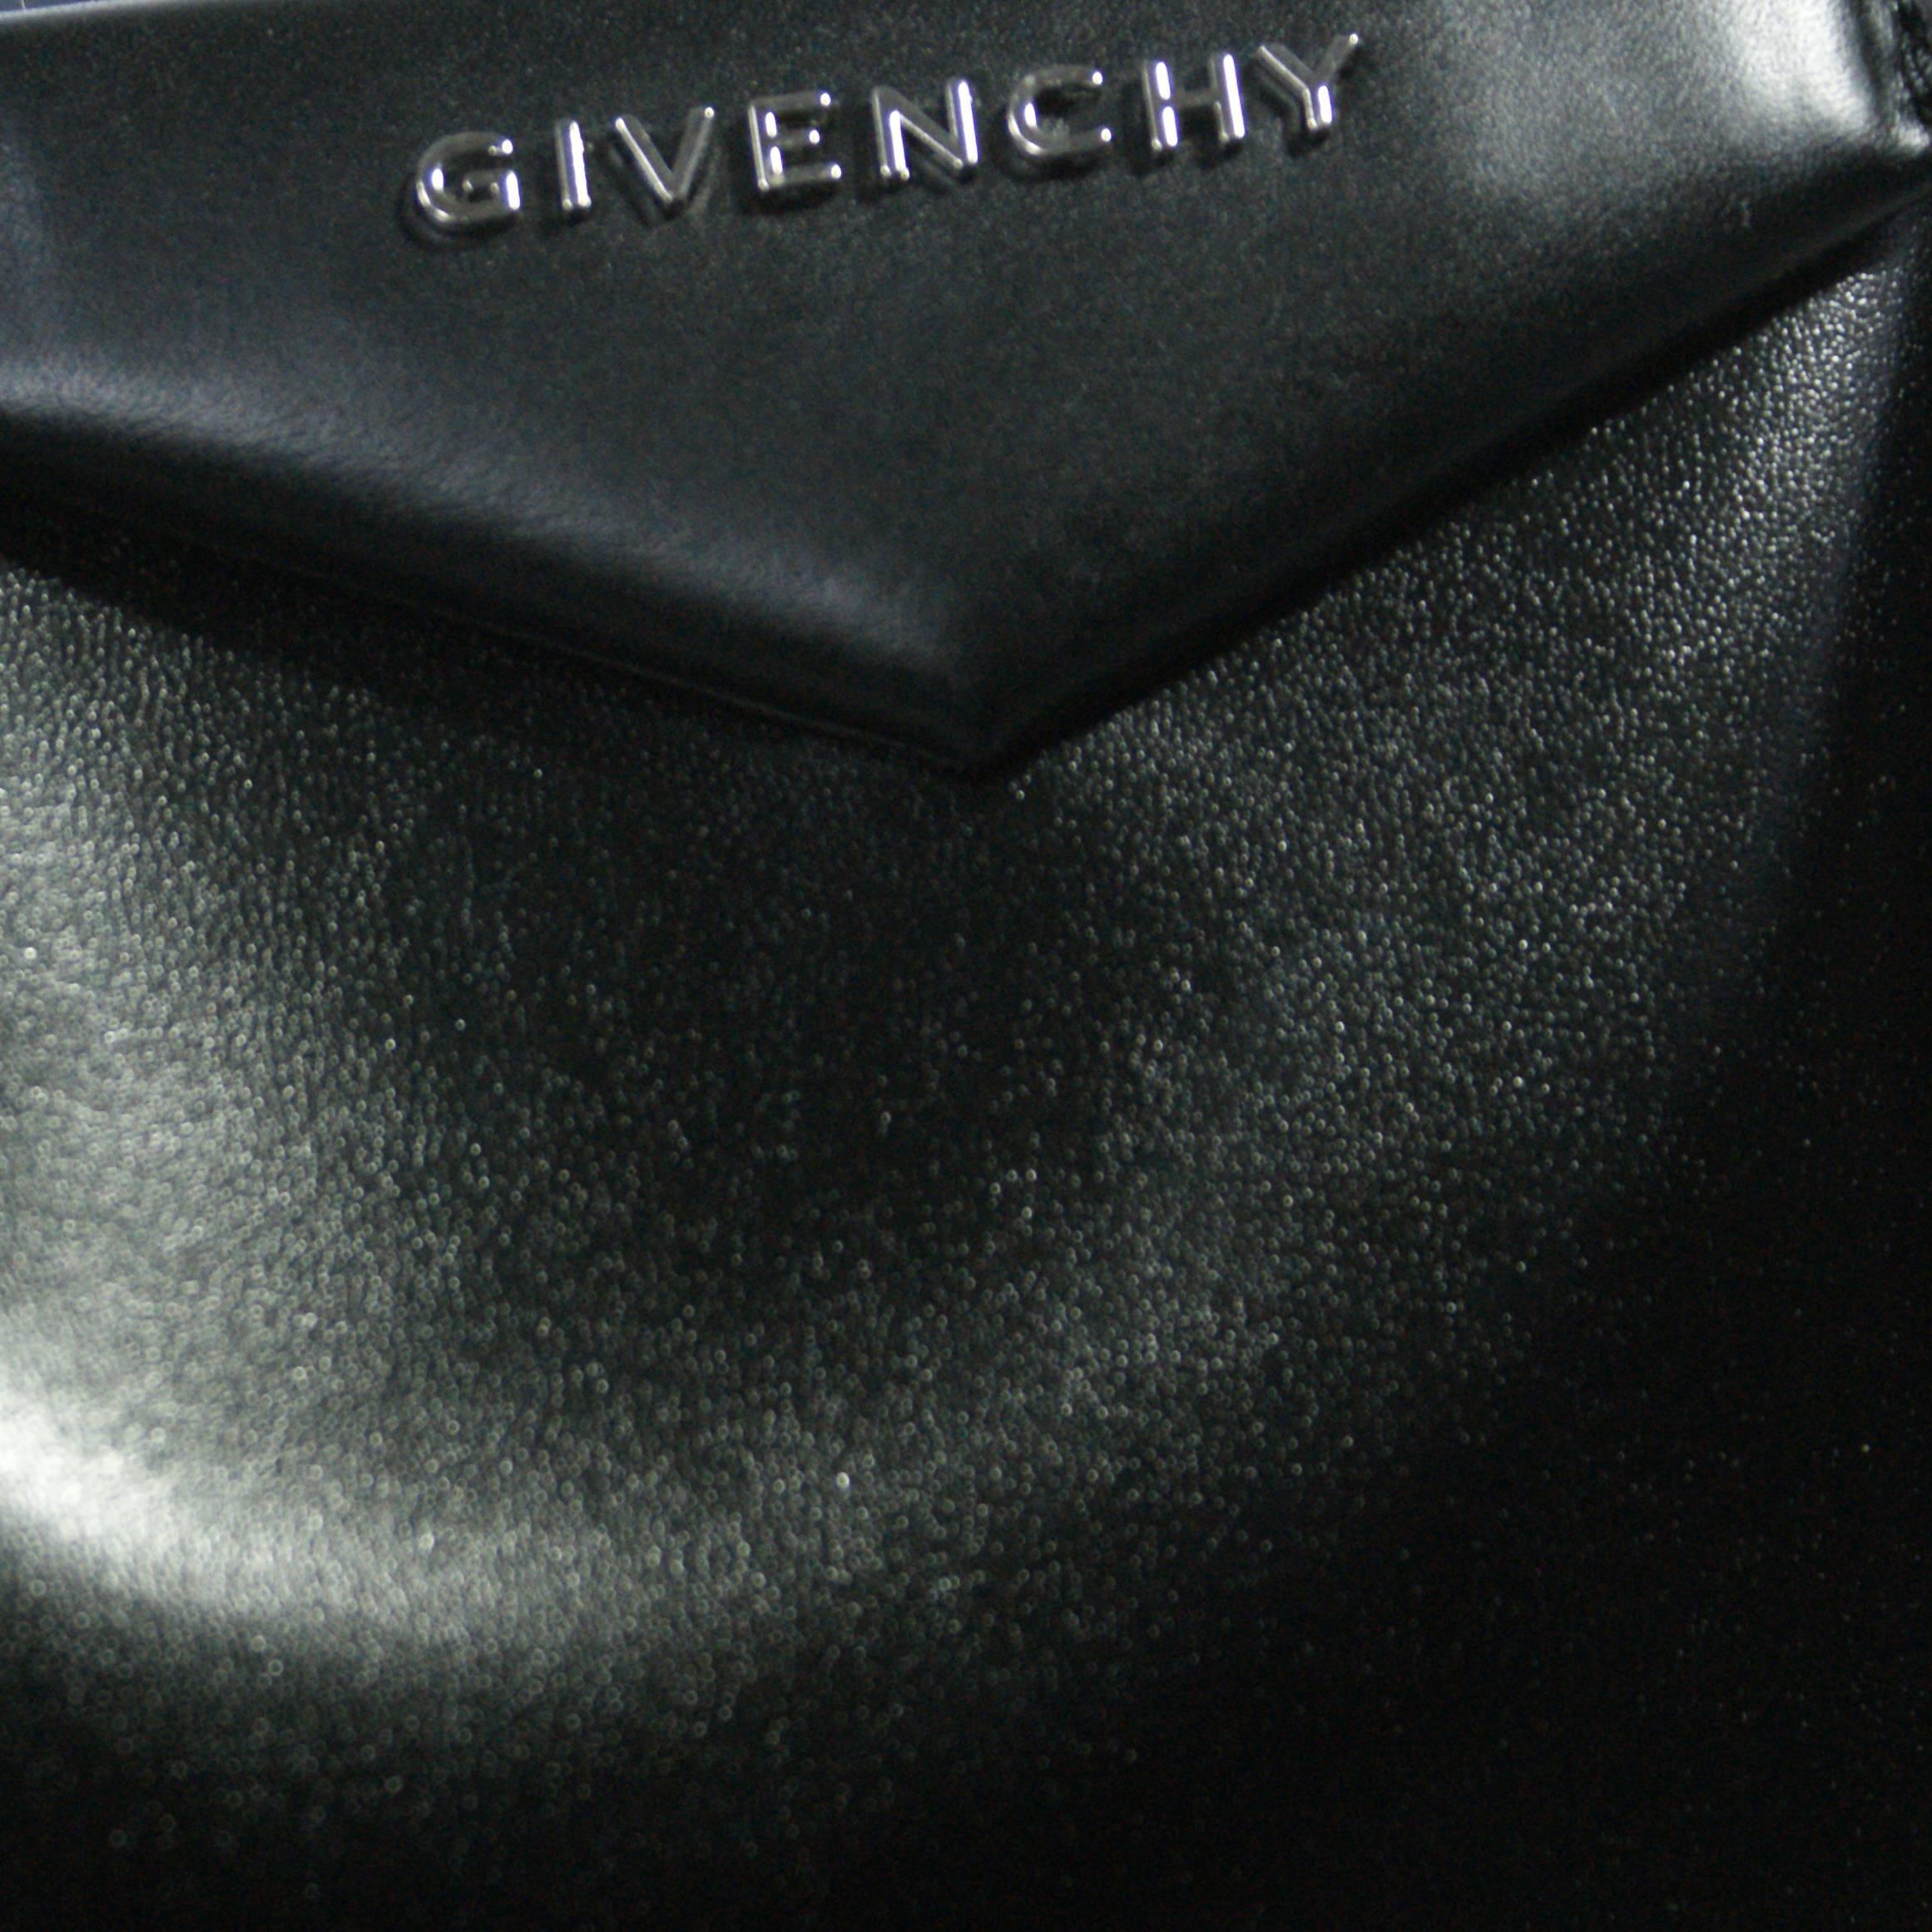 Givenchy black calfskin Antigona Shopper Tote.

Signature 